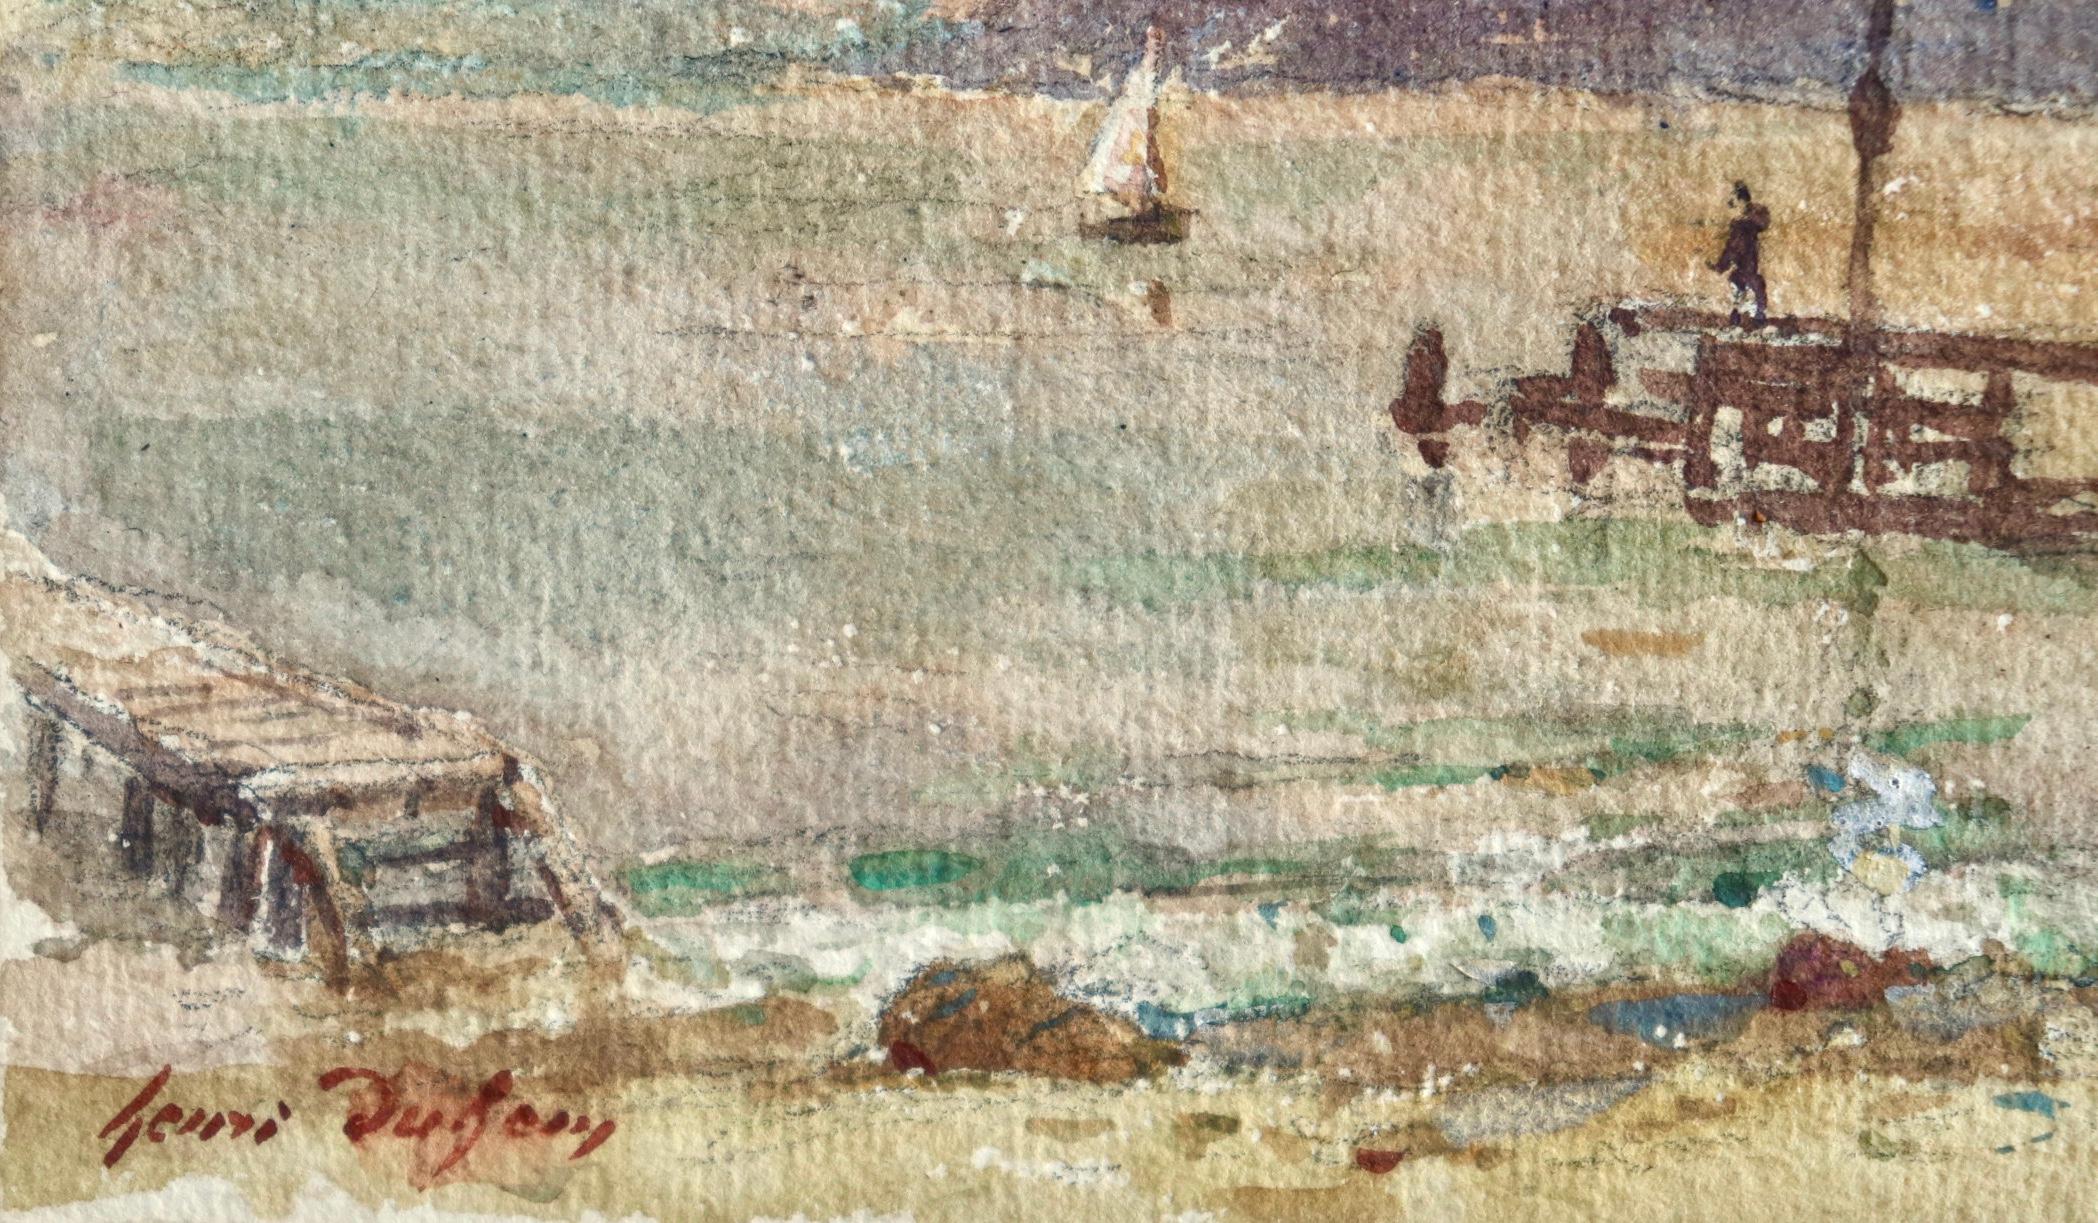 Le quai - le soir - Impressionist Watercolor, Figures at the Coast by H Duhem - Art by Henri Duhem